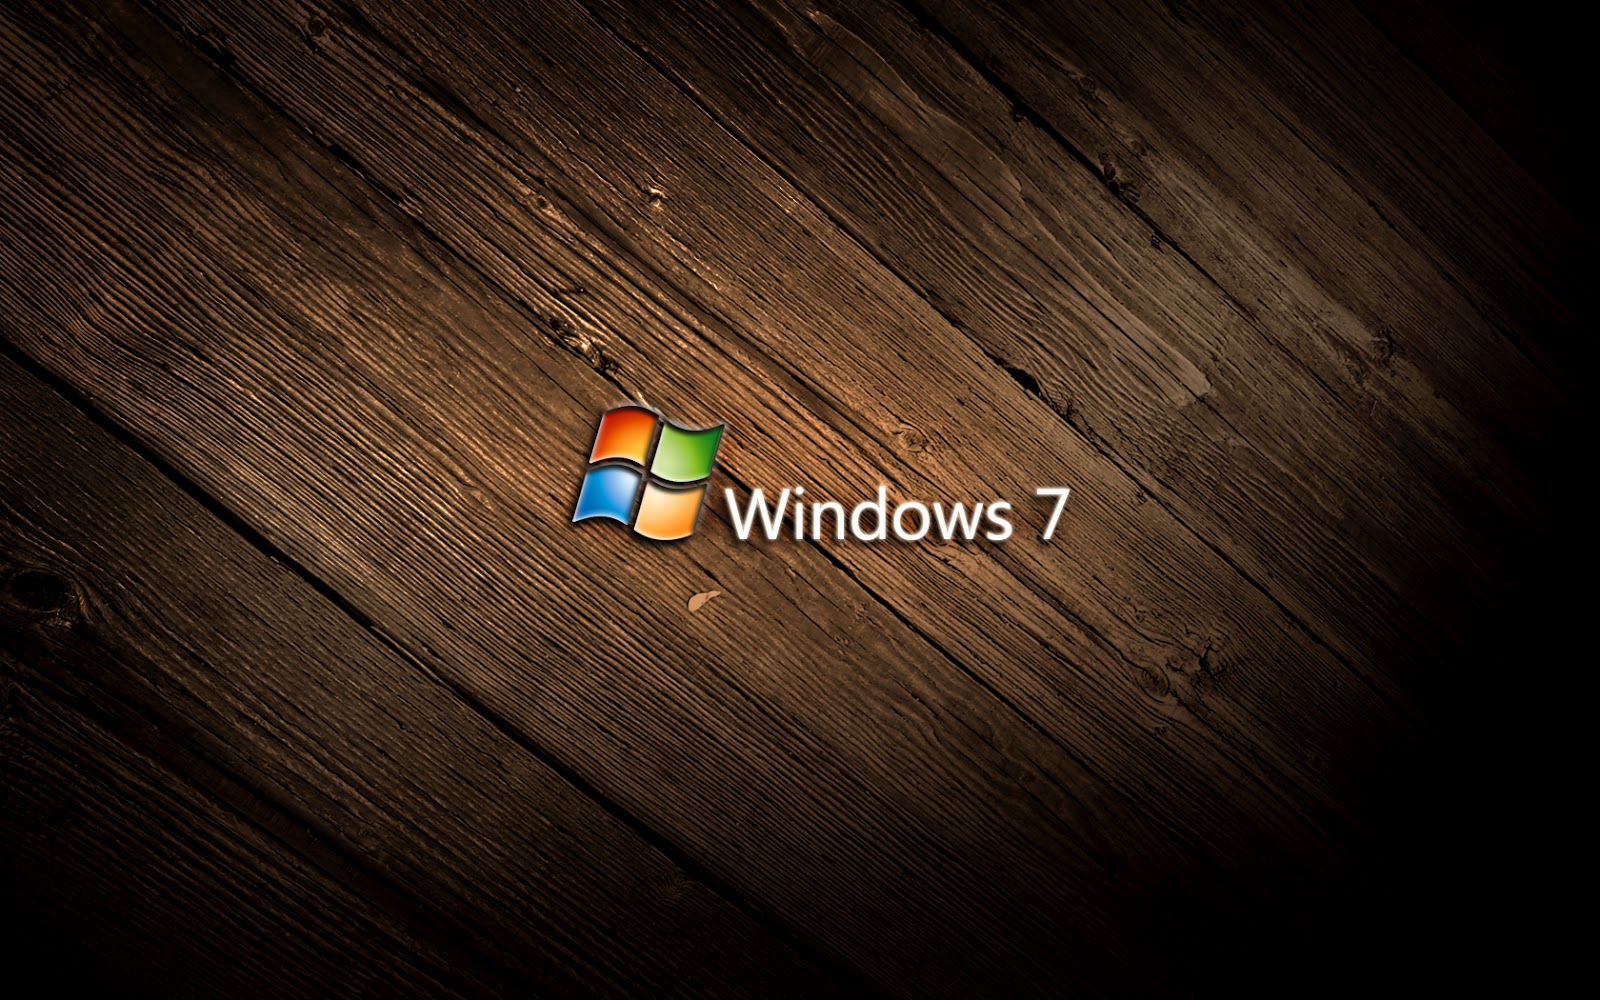 Bạn muốn tìm kiếm những hình nền đẹp và chất lượng cao cho máy tính của mình? Hãy đến với chúng tôi và khám phá tuyệt phẩm Windows 7 HD Wallpapers. Với những bức ảnh này, bạn chắc chắn sẽ có trải nghiệm tuyệt vời khi làm việc trên máy tính của mình.